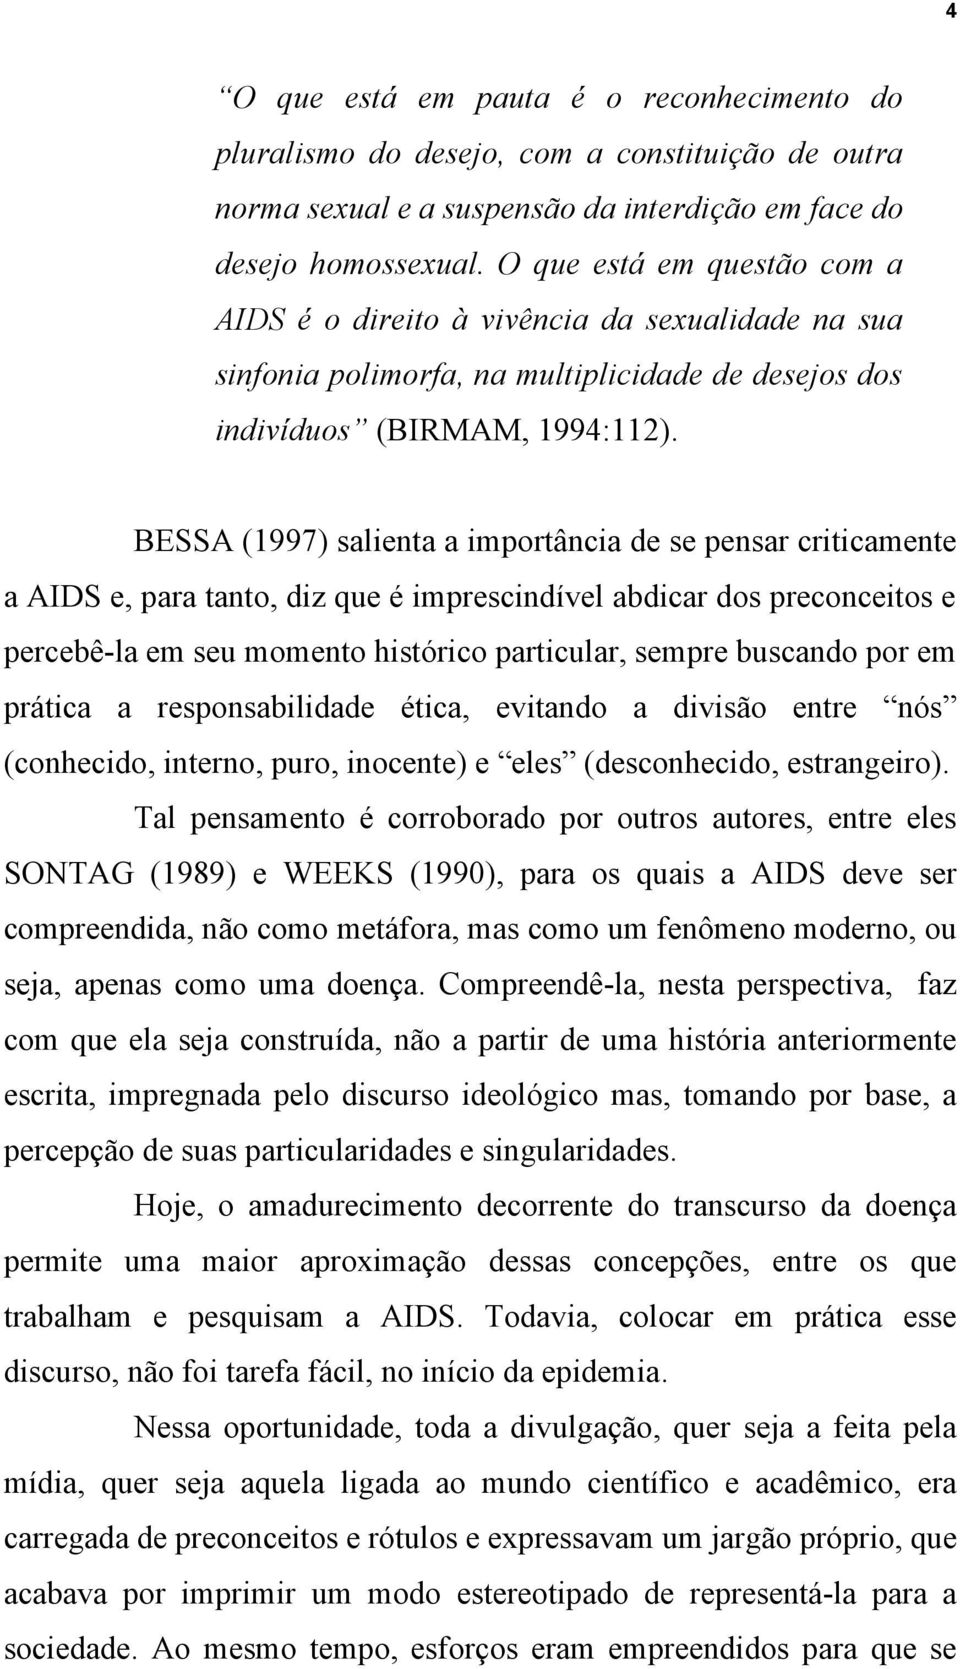 BESSA (1997) salienta a importância de se pensar criticamente a AIDS e, para tanto, diz que é imprescindível abdicar dos preconceitos e percebê-la em seu momento histórico particular, sempre buscando